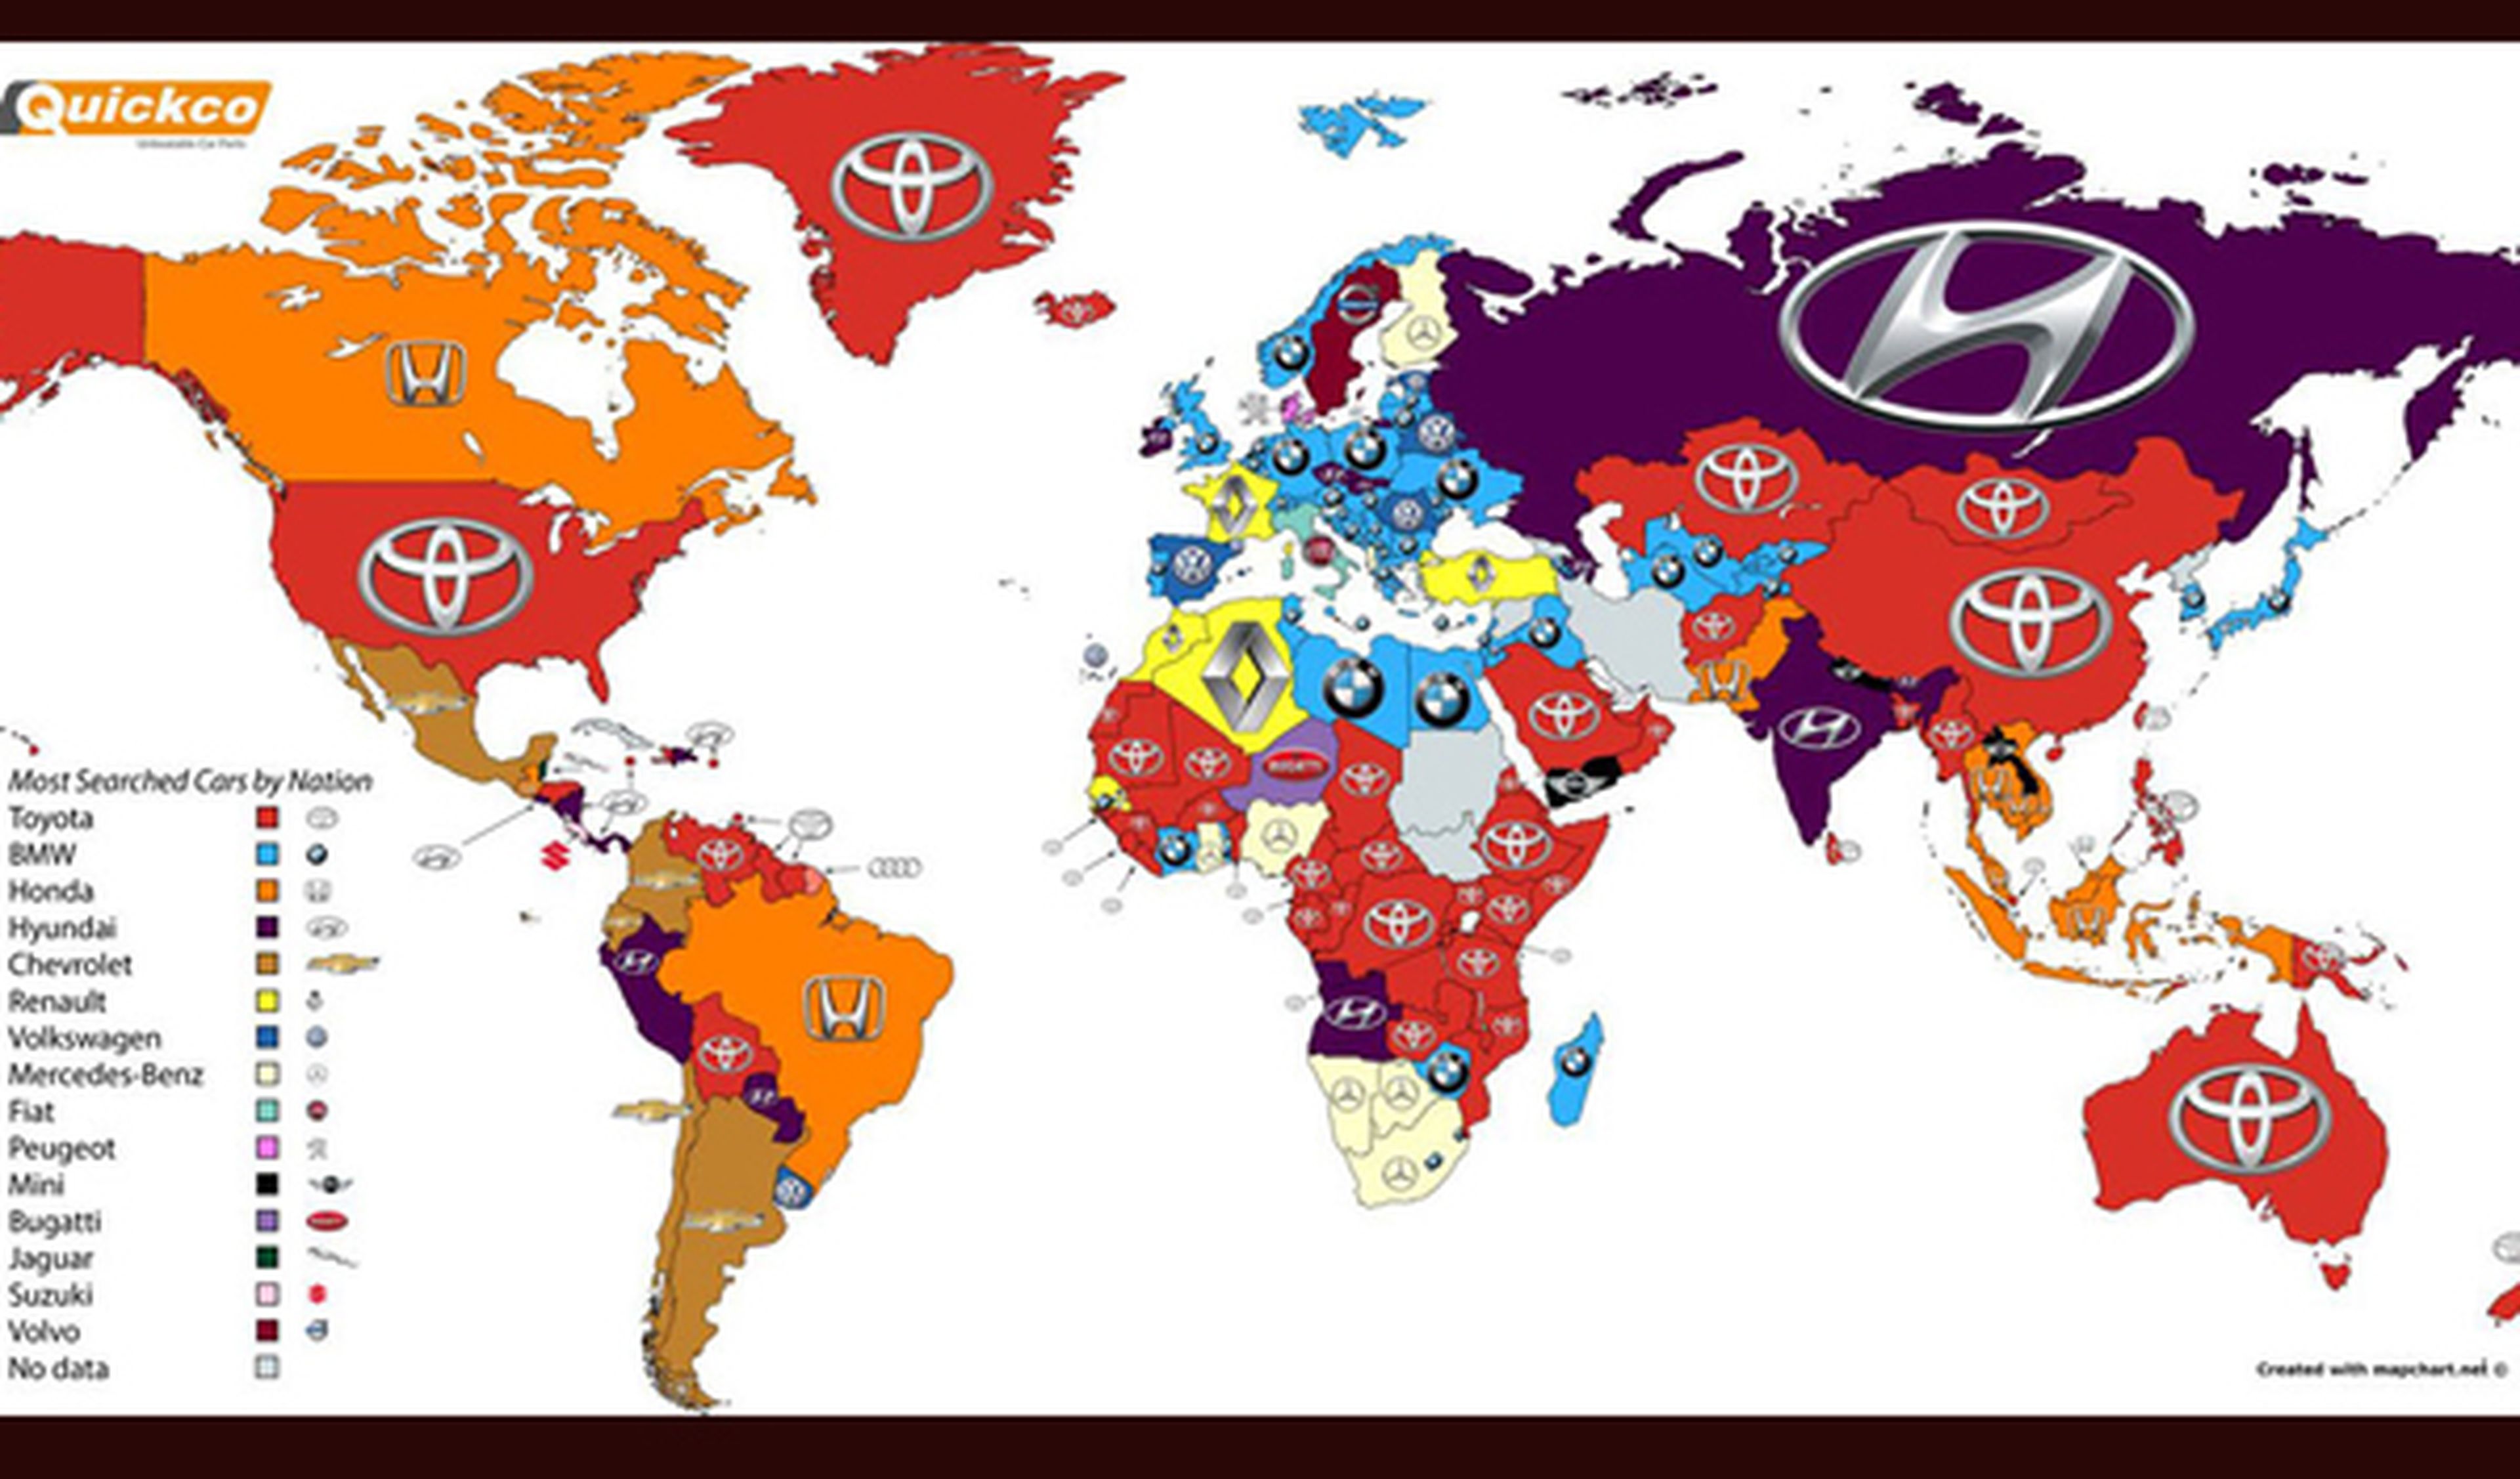 Las marcas de coches más buscadas en Google por países